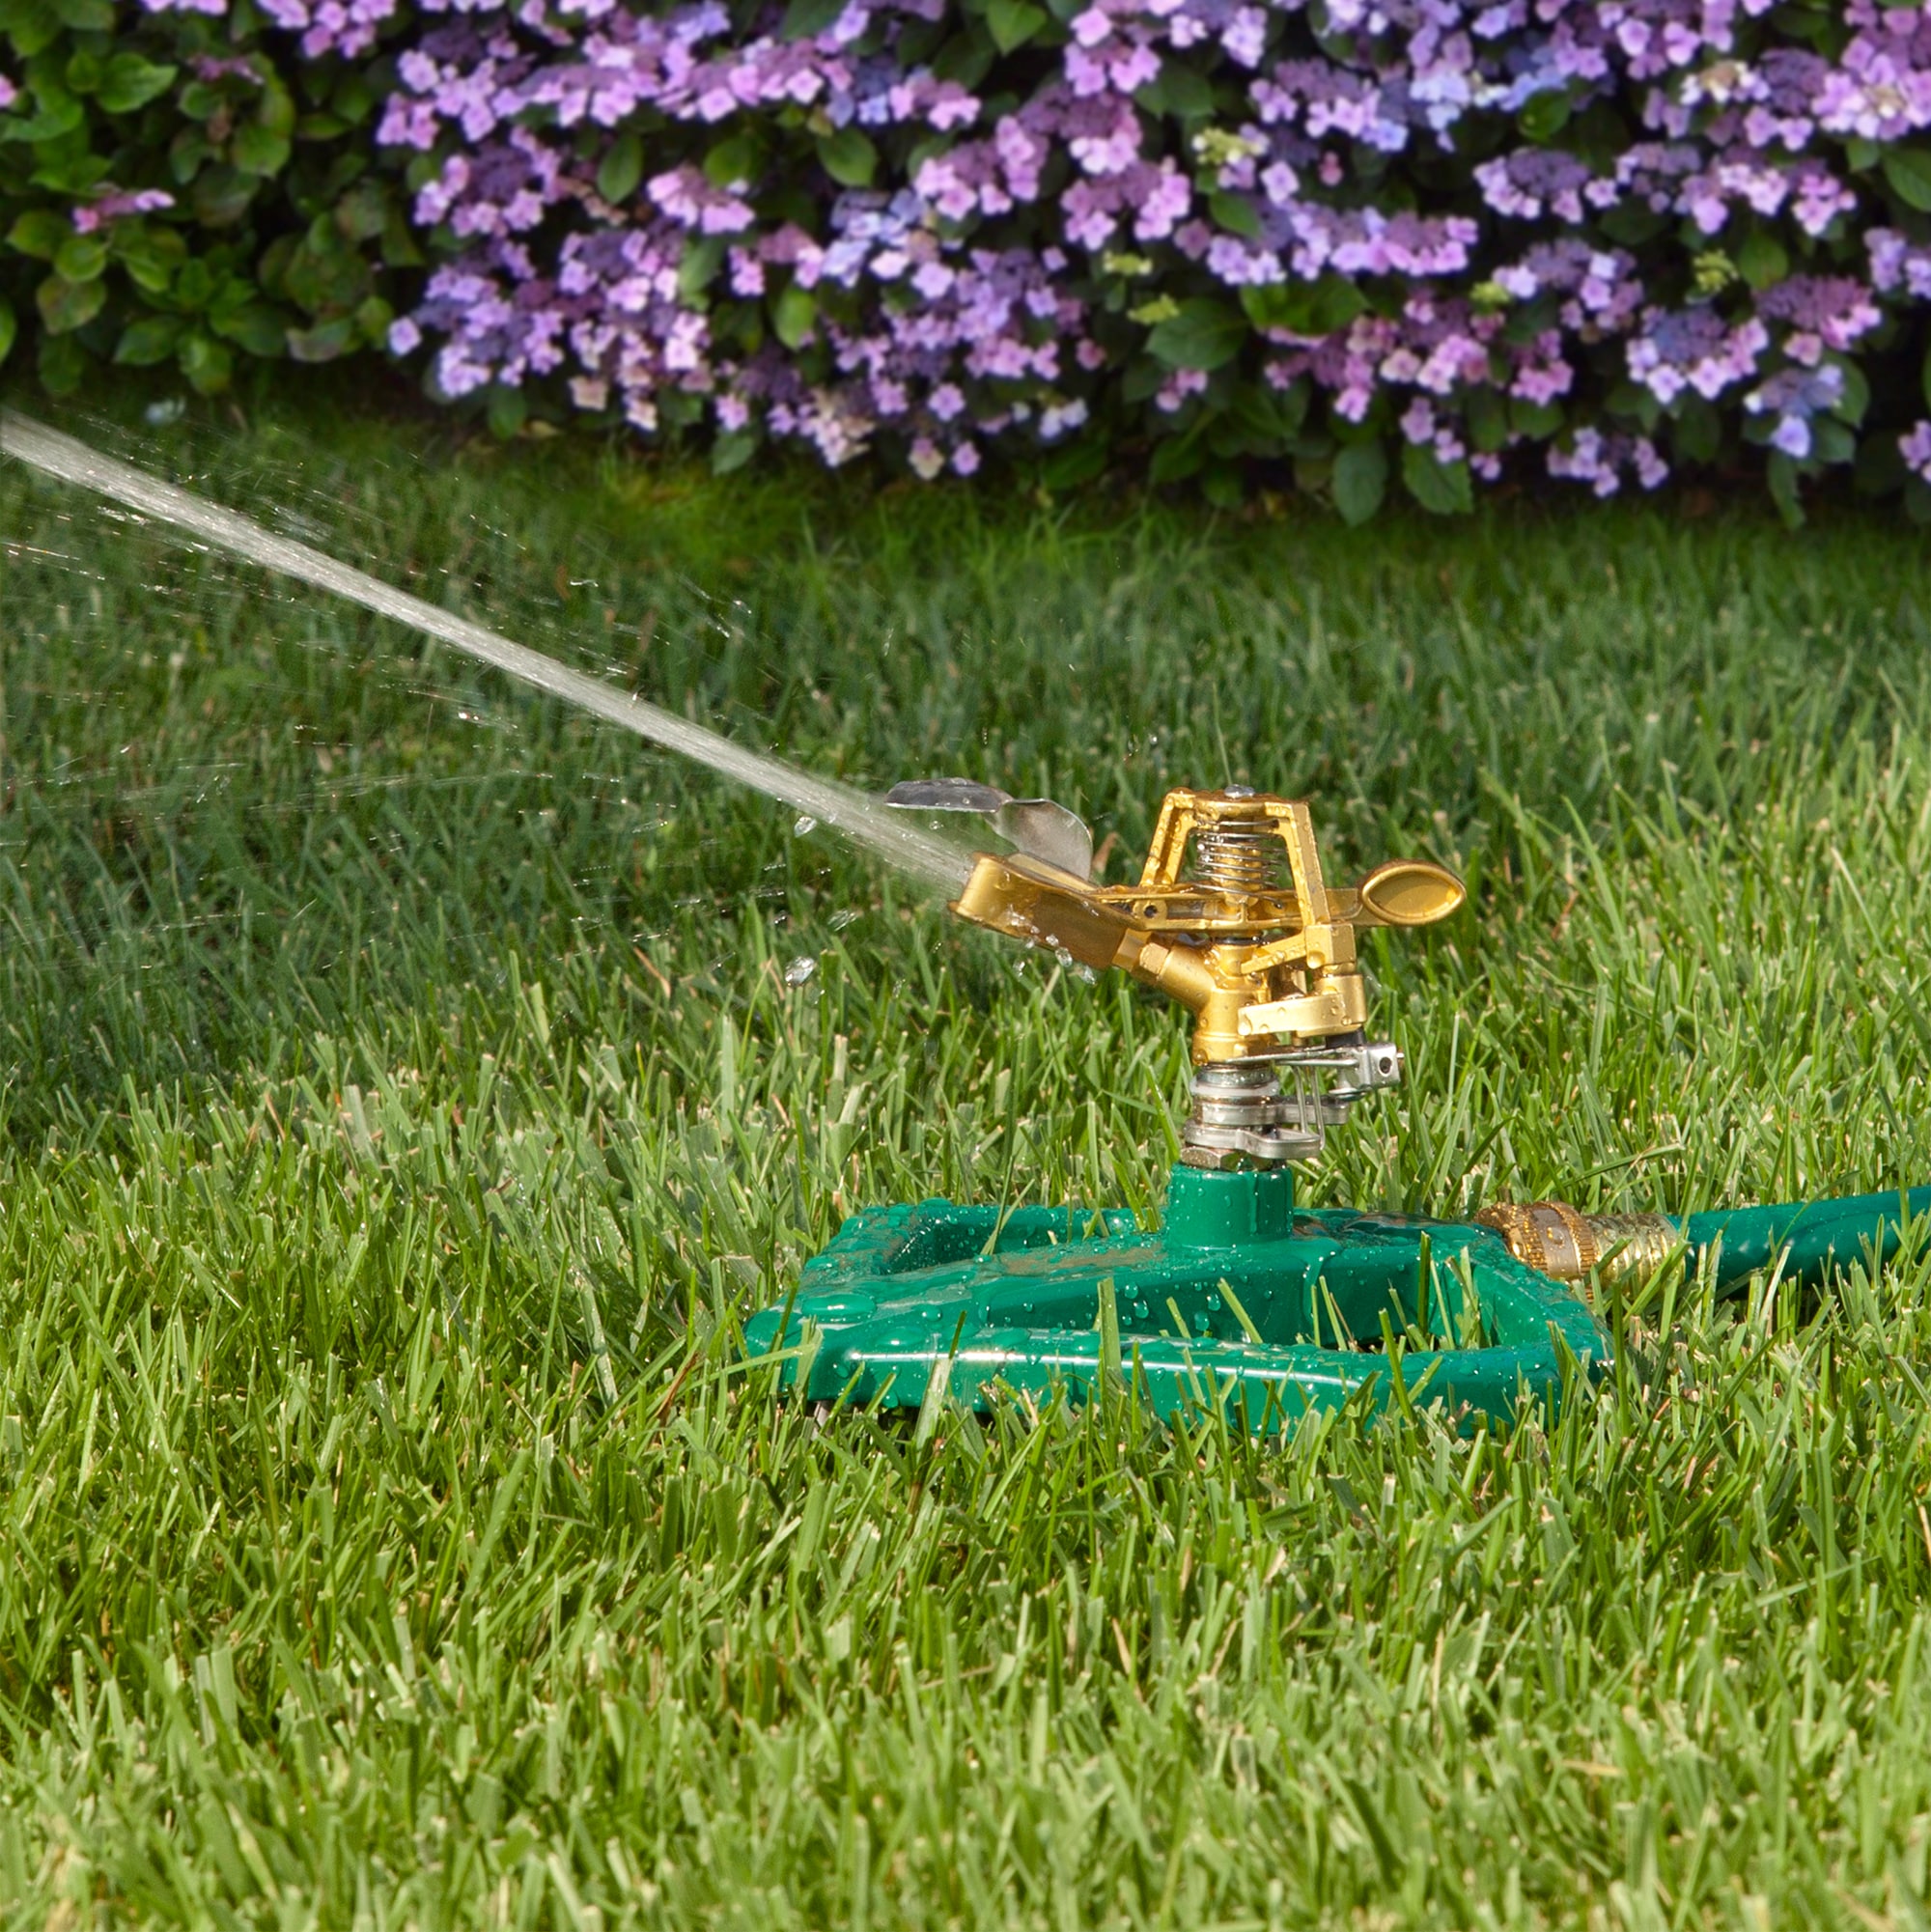 Melnor 5675-sq ft Impulse Sled Lawn Sprinkler in the Lawn